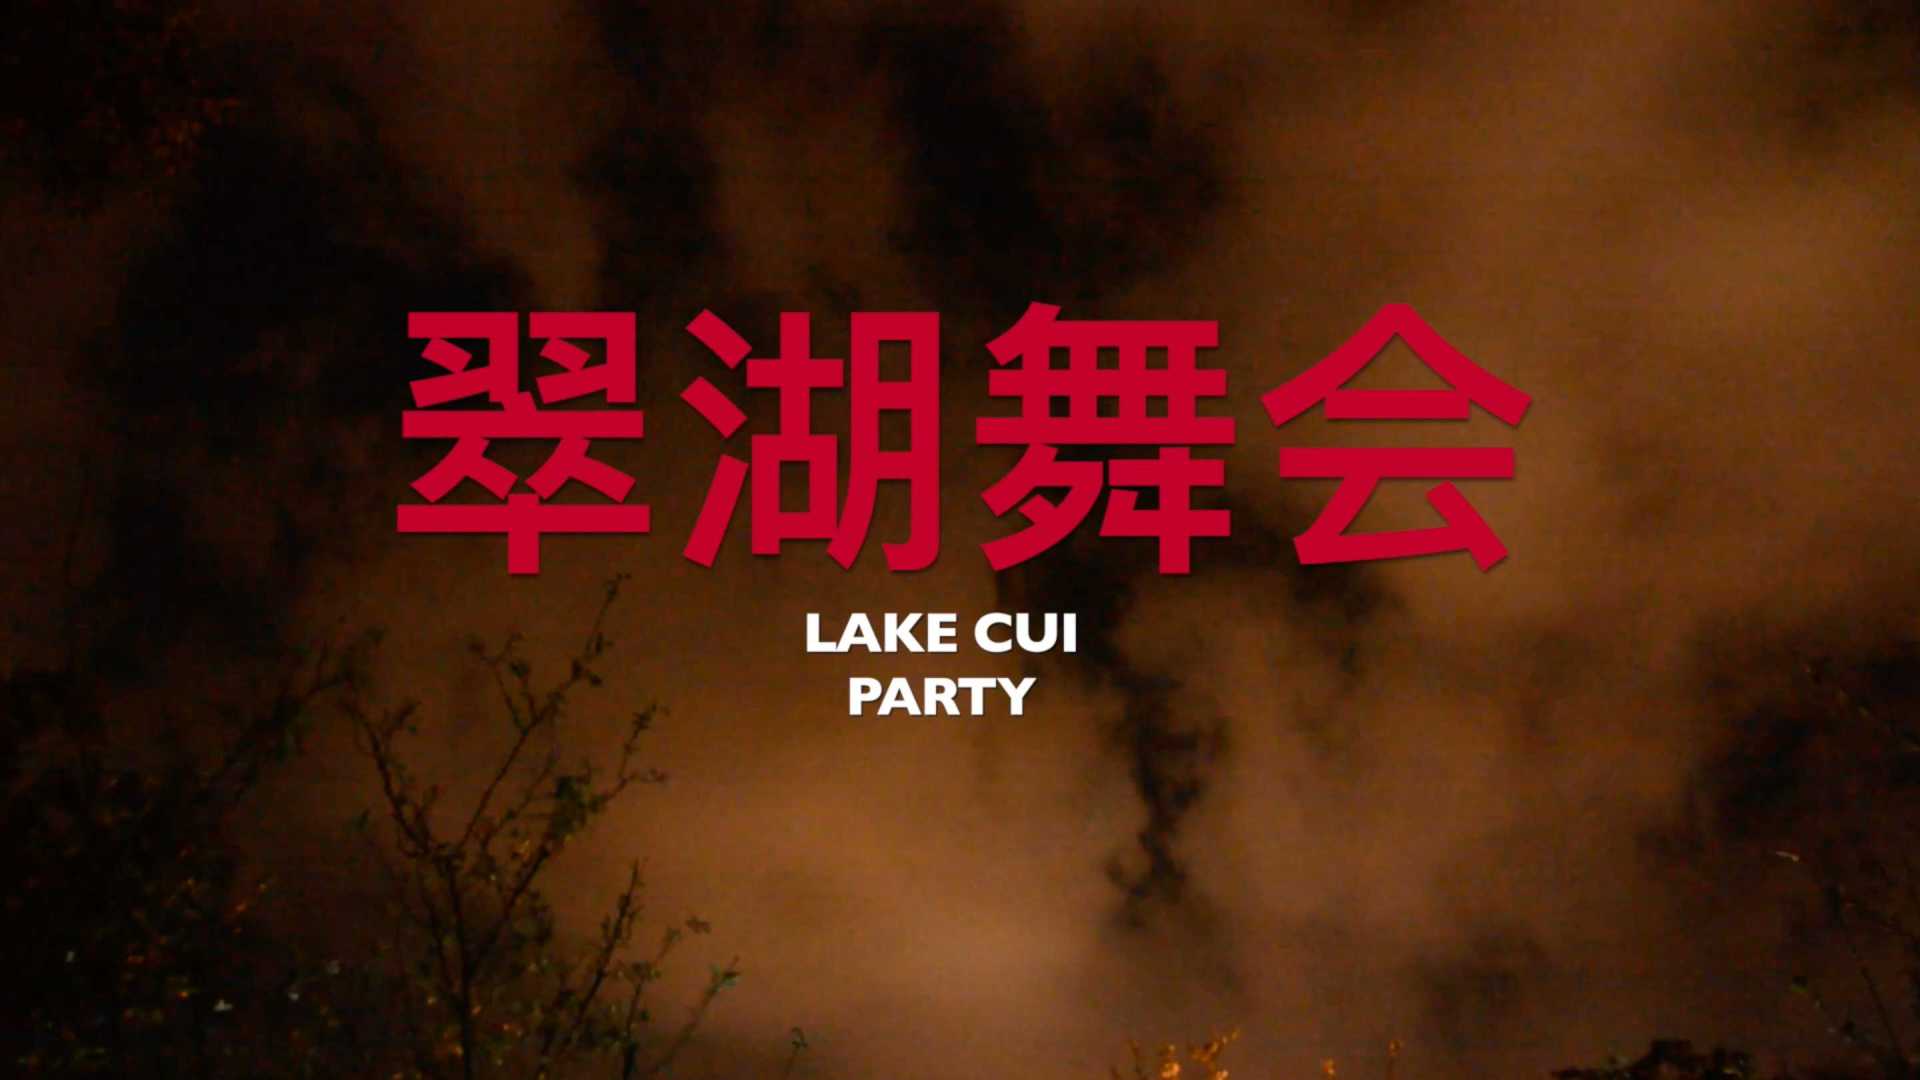 翠湖舞会 Green Lake Party 「纪录片」